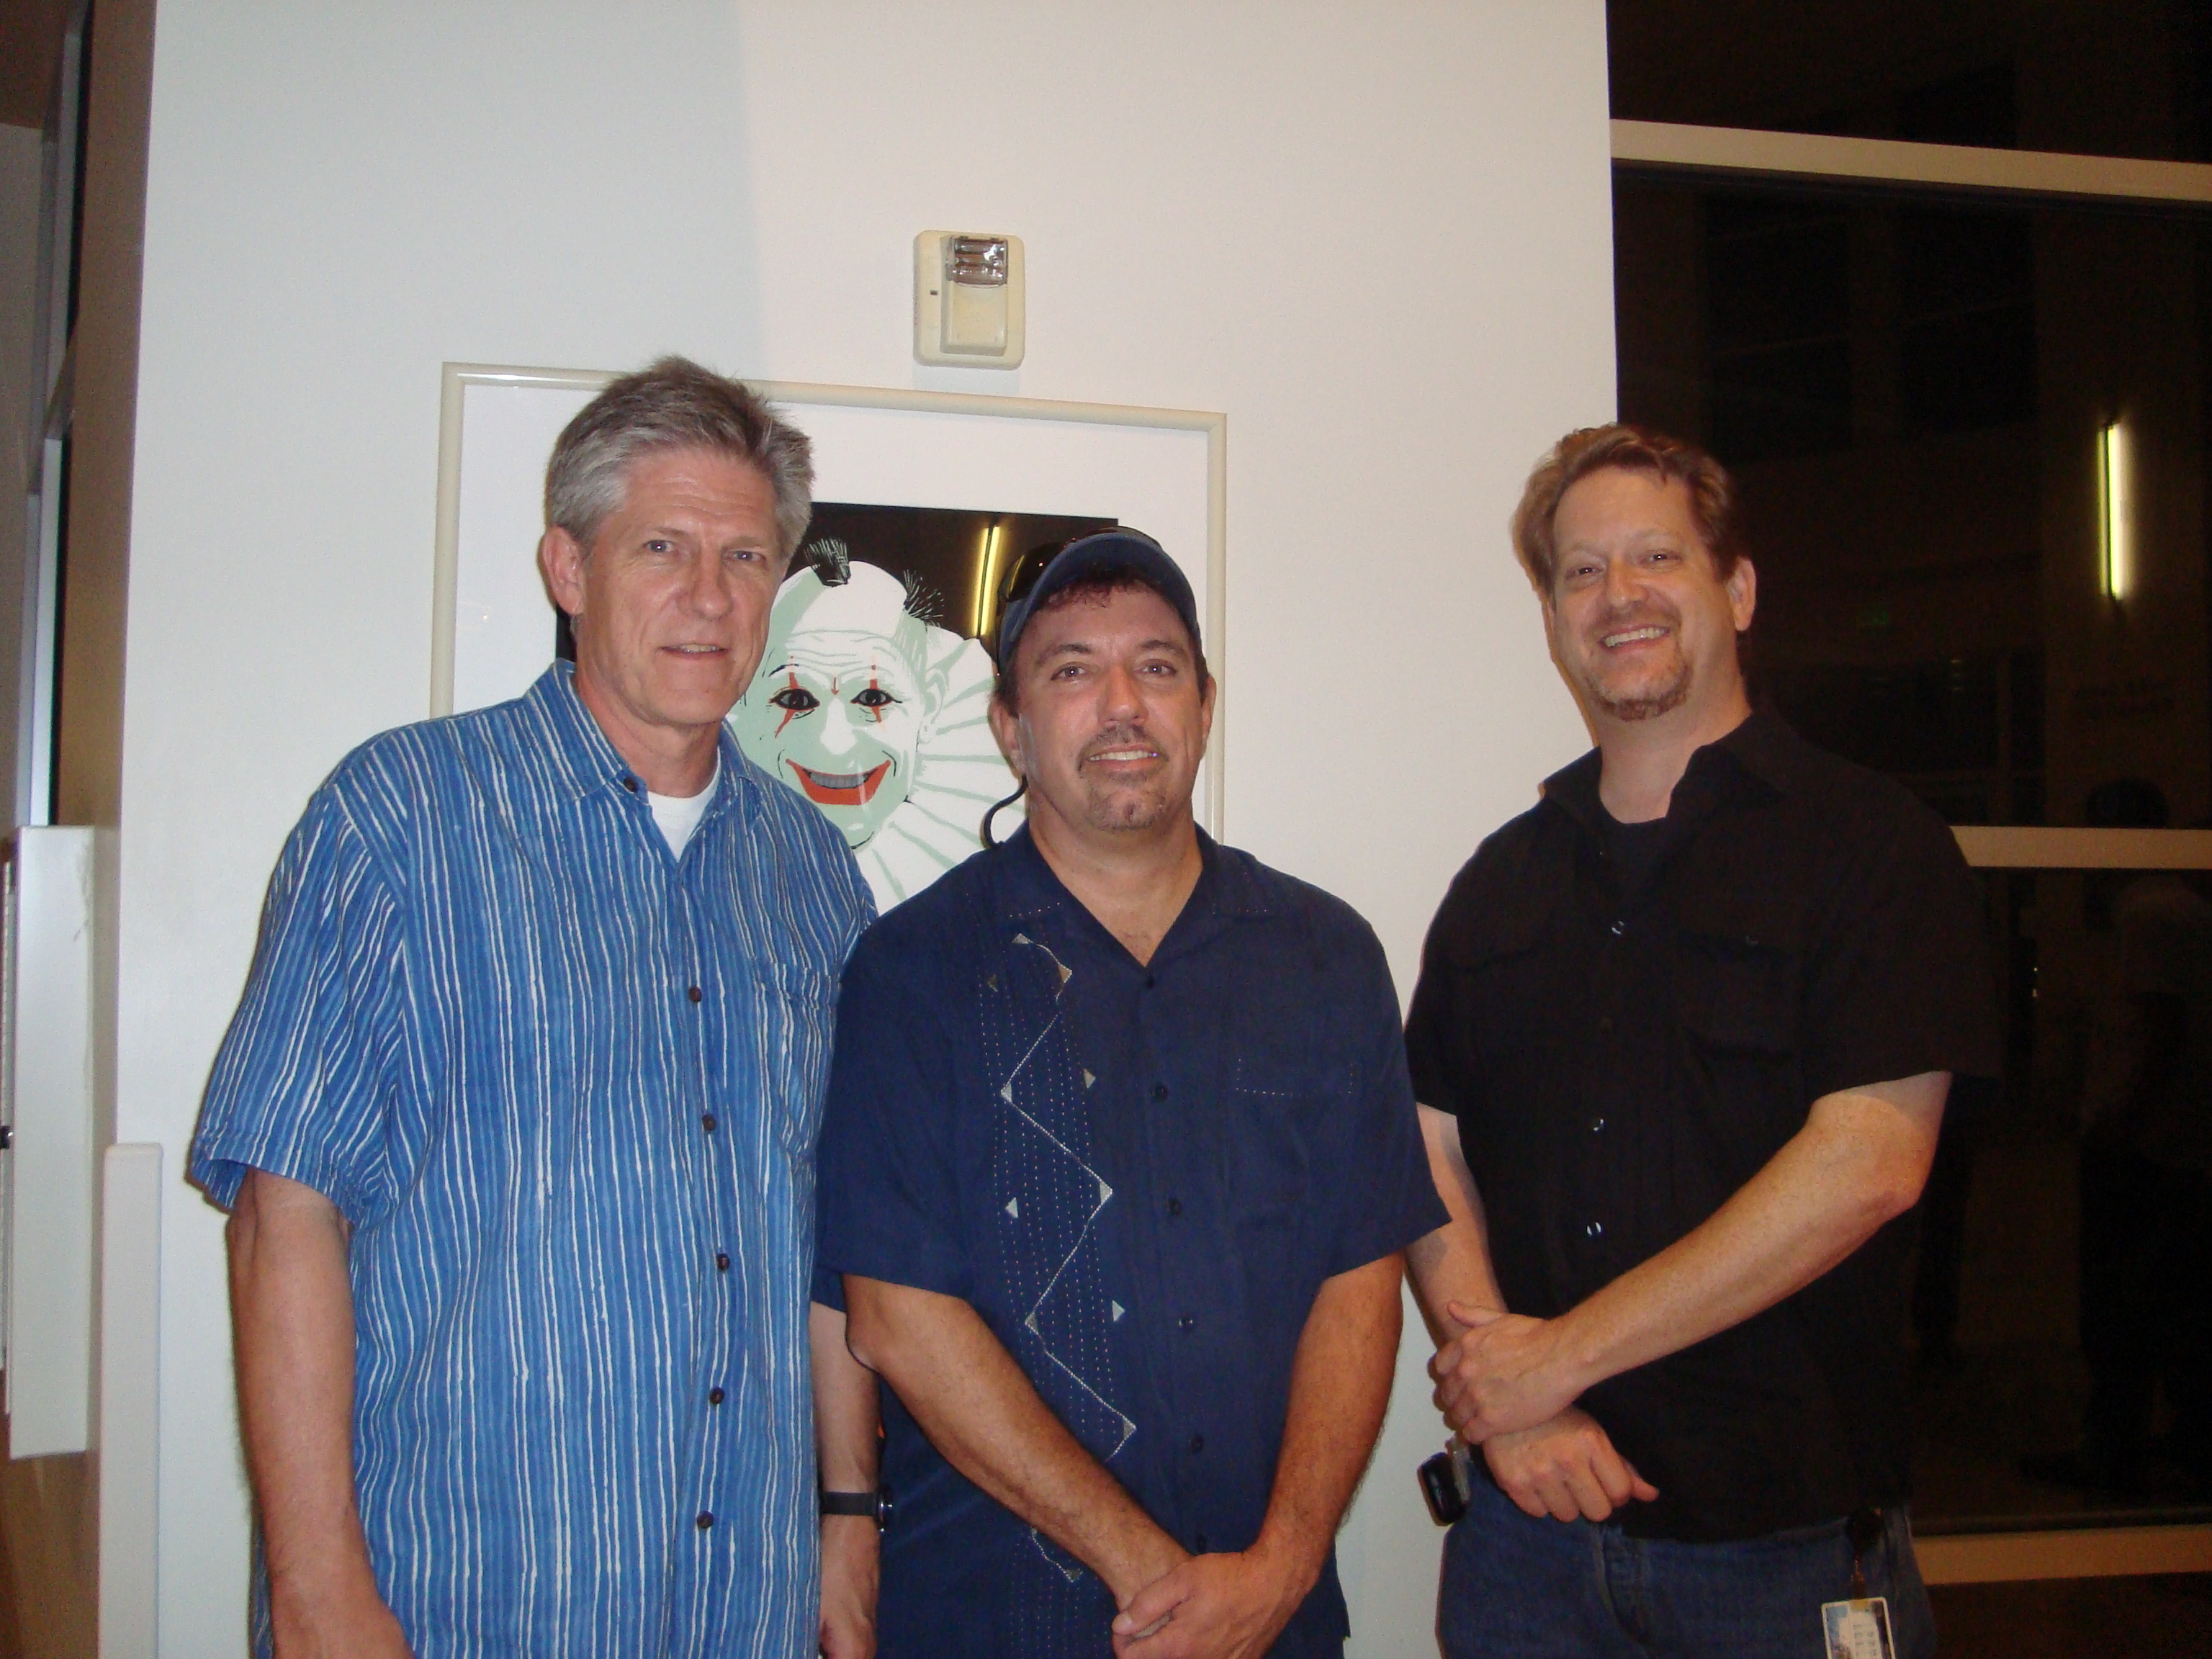 Bill Kroyer, Ralph Eggleston, Adam Rote